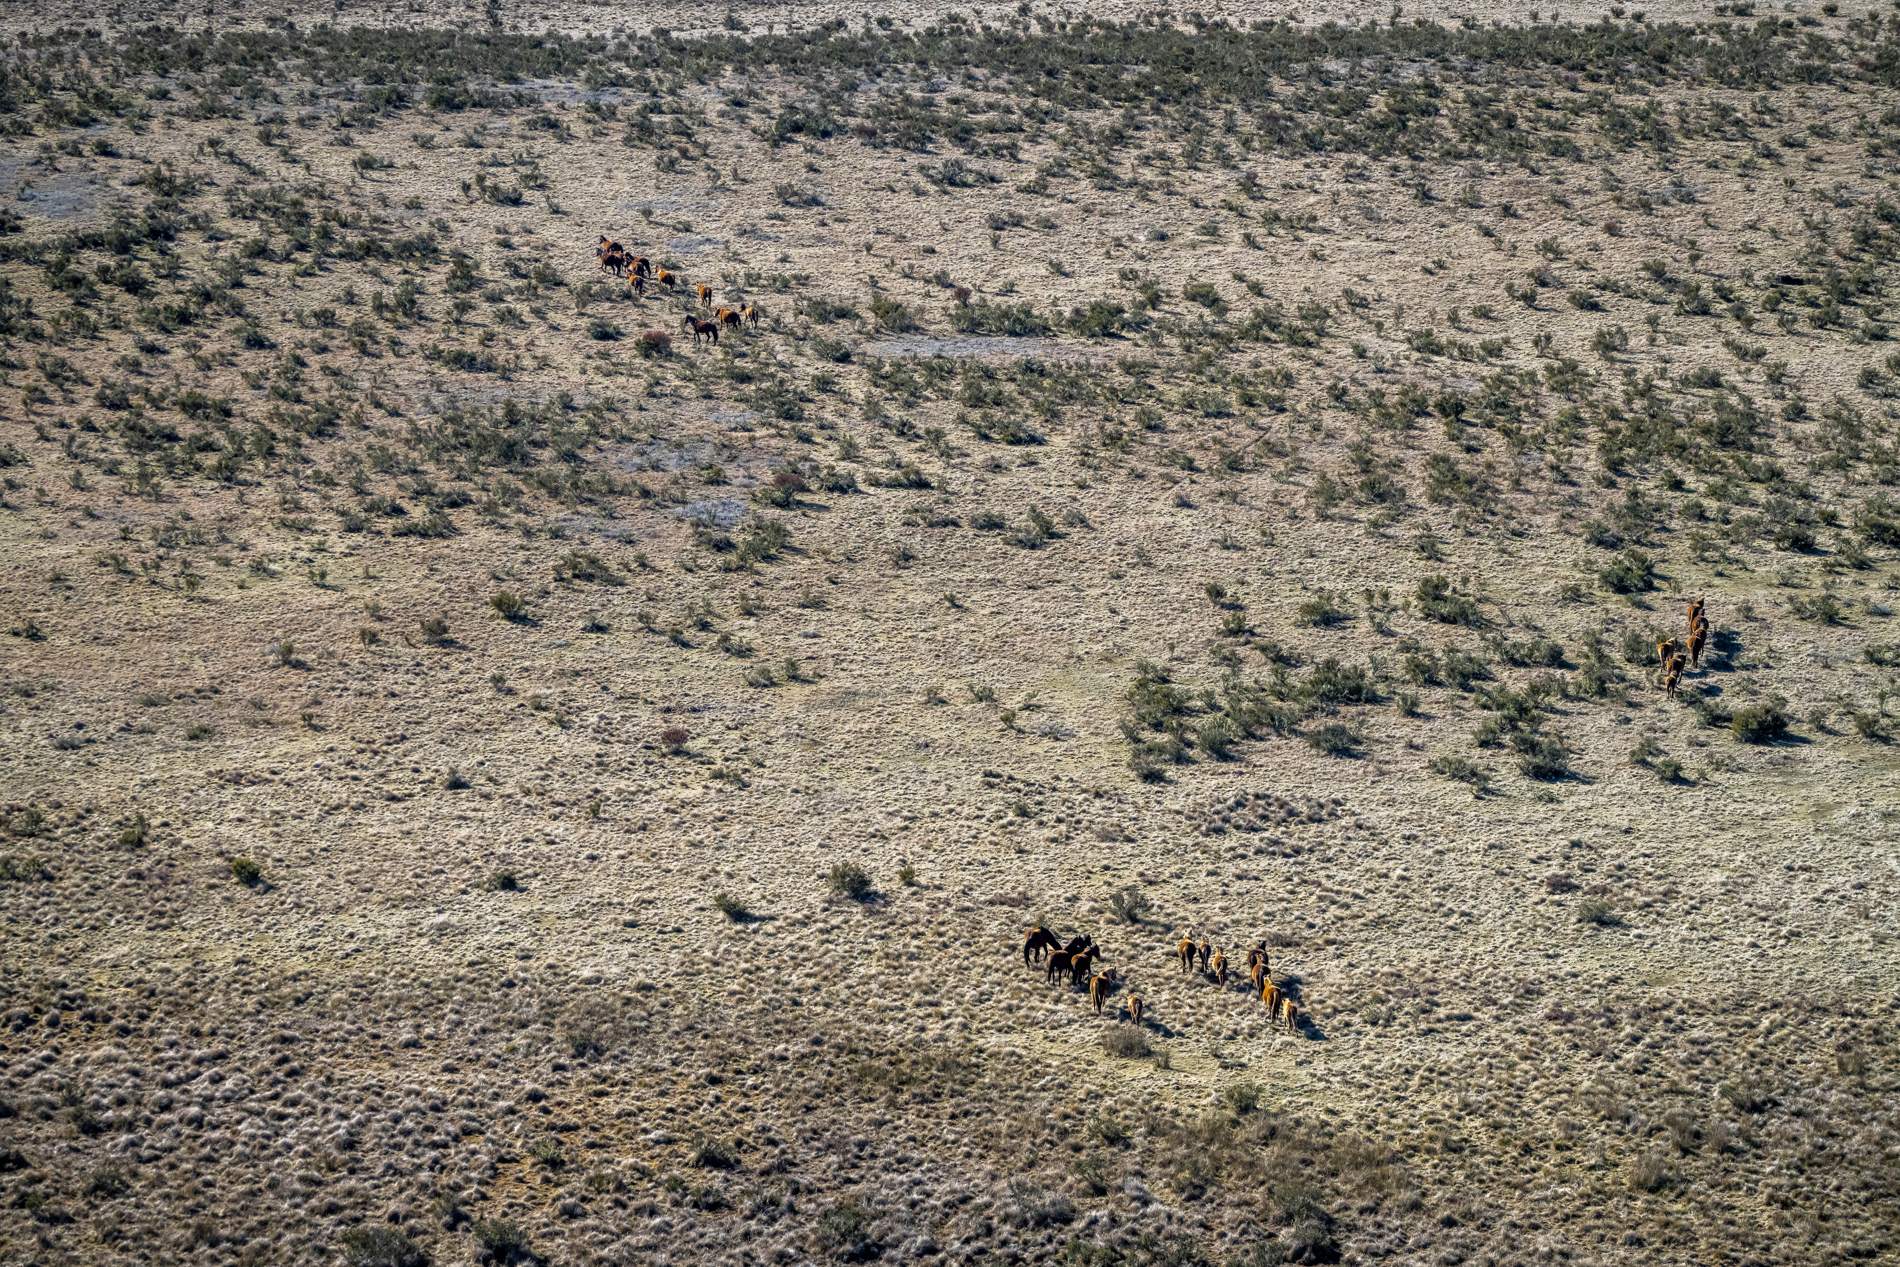 Polémica en Australia: el gobierno aprueba la matanza aérea de miles de caballos salvajes